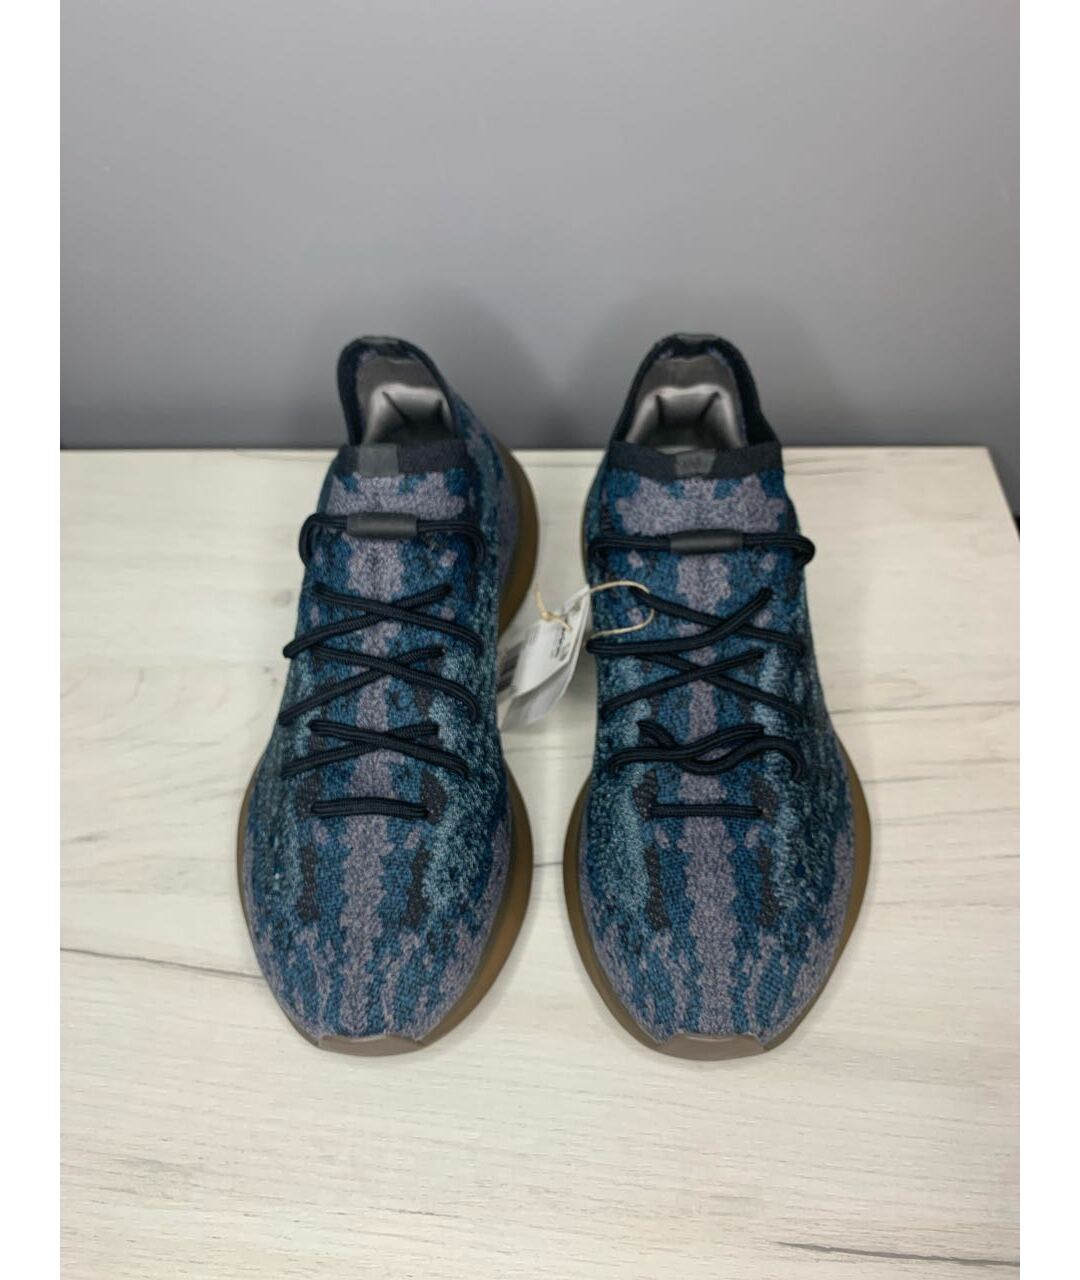 ADIDAS YEEZY Темно-синие текстильные низкие кроссовки / кеды, фото 2